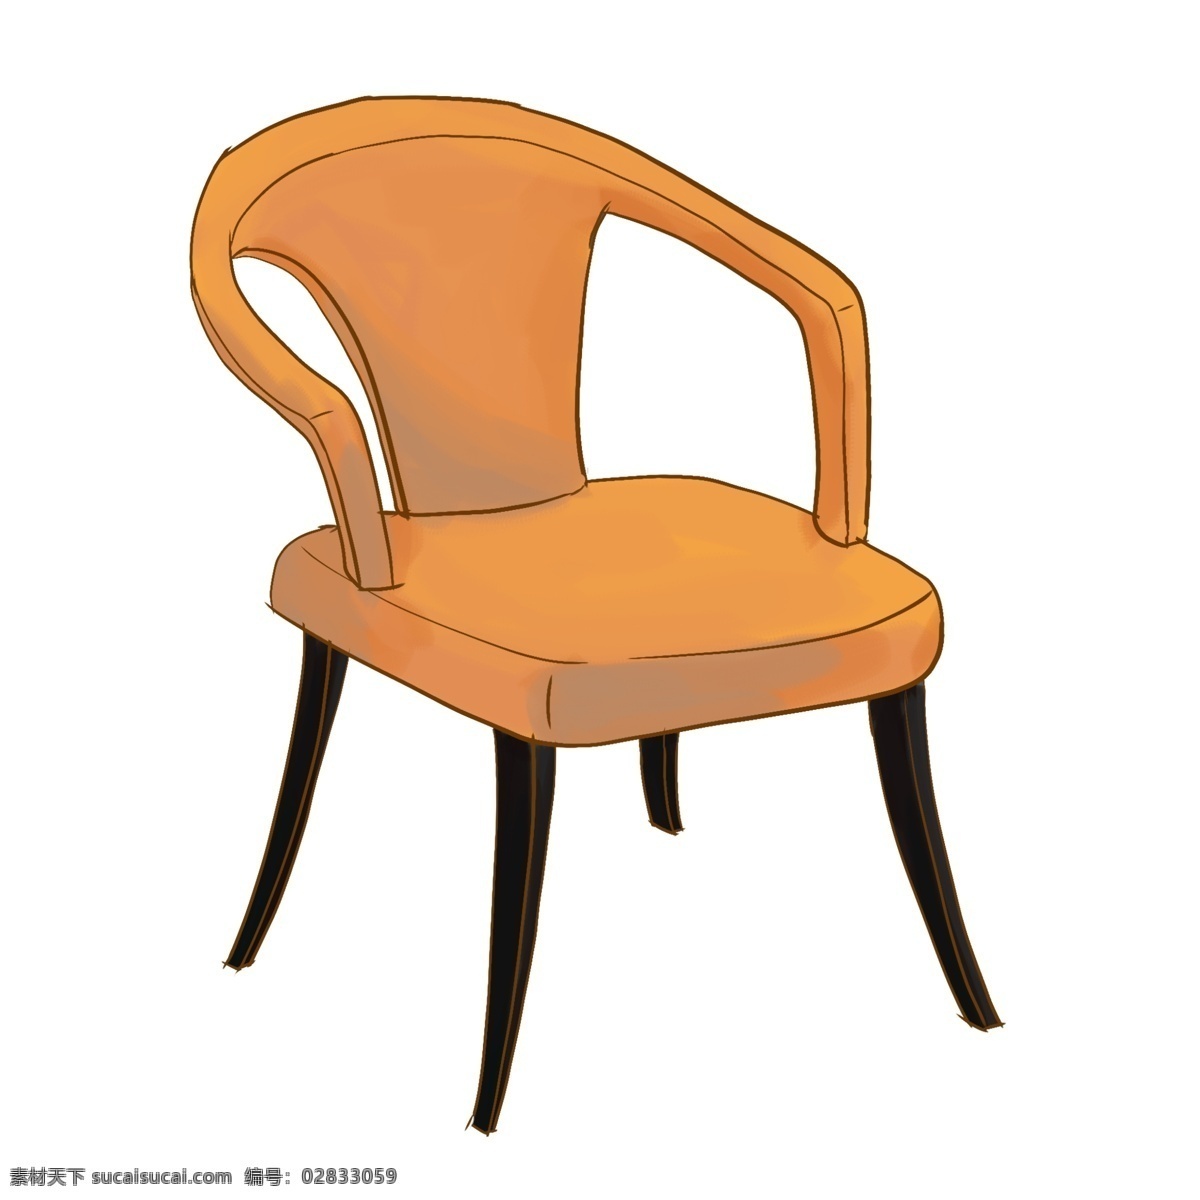 真皮 椅子 装饰 插画 黄色的椅子 真皮椅子 椅子装饰 椅子插画 家具椅子 漂亮的椅子 立体椅子 精美椅子